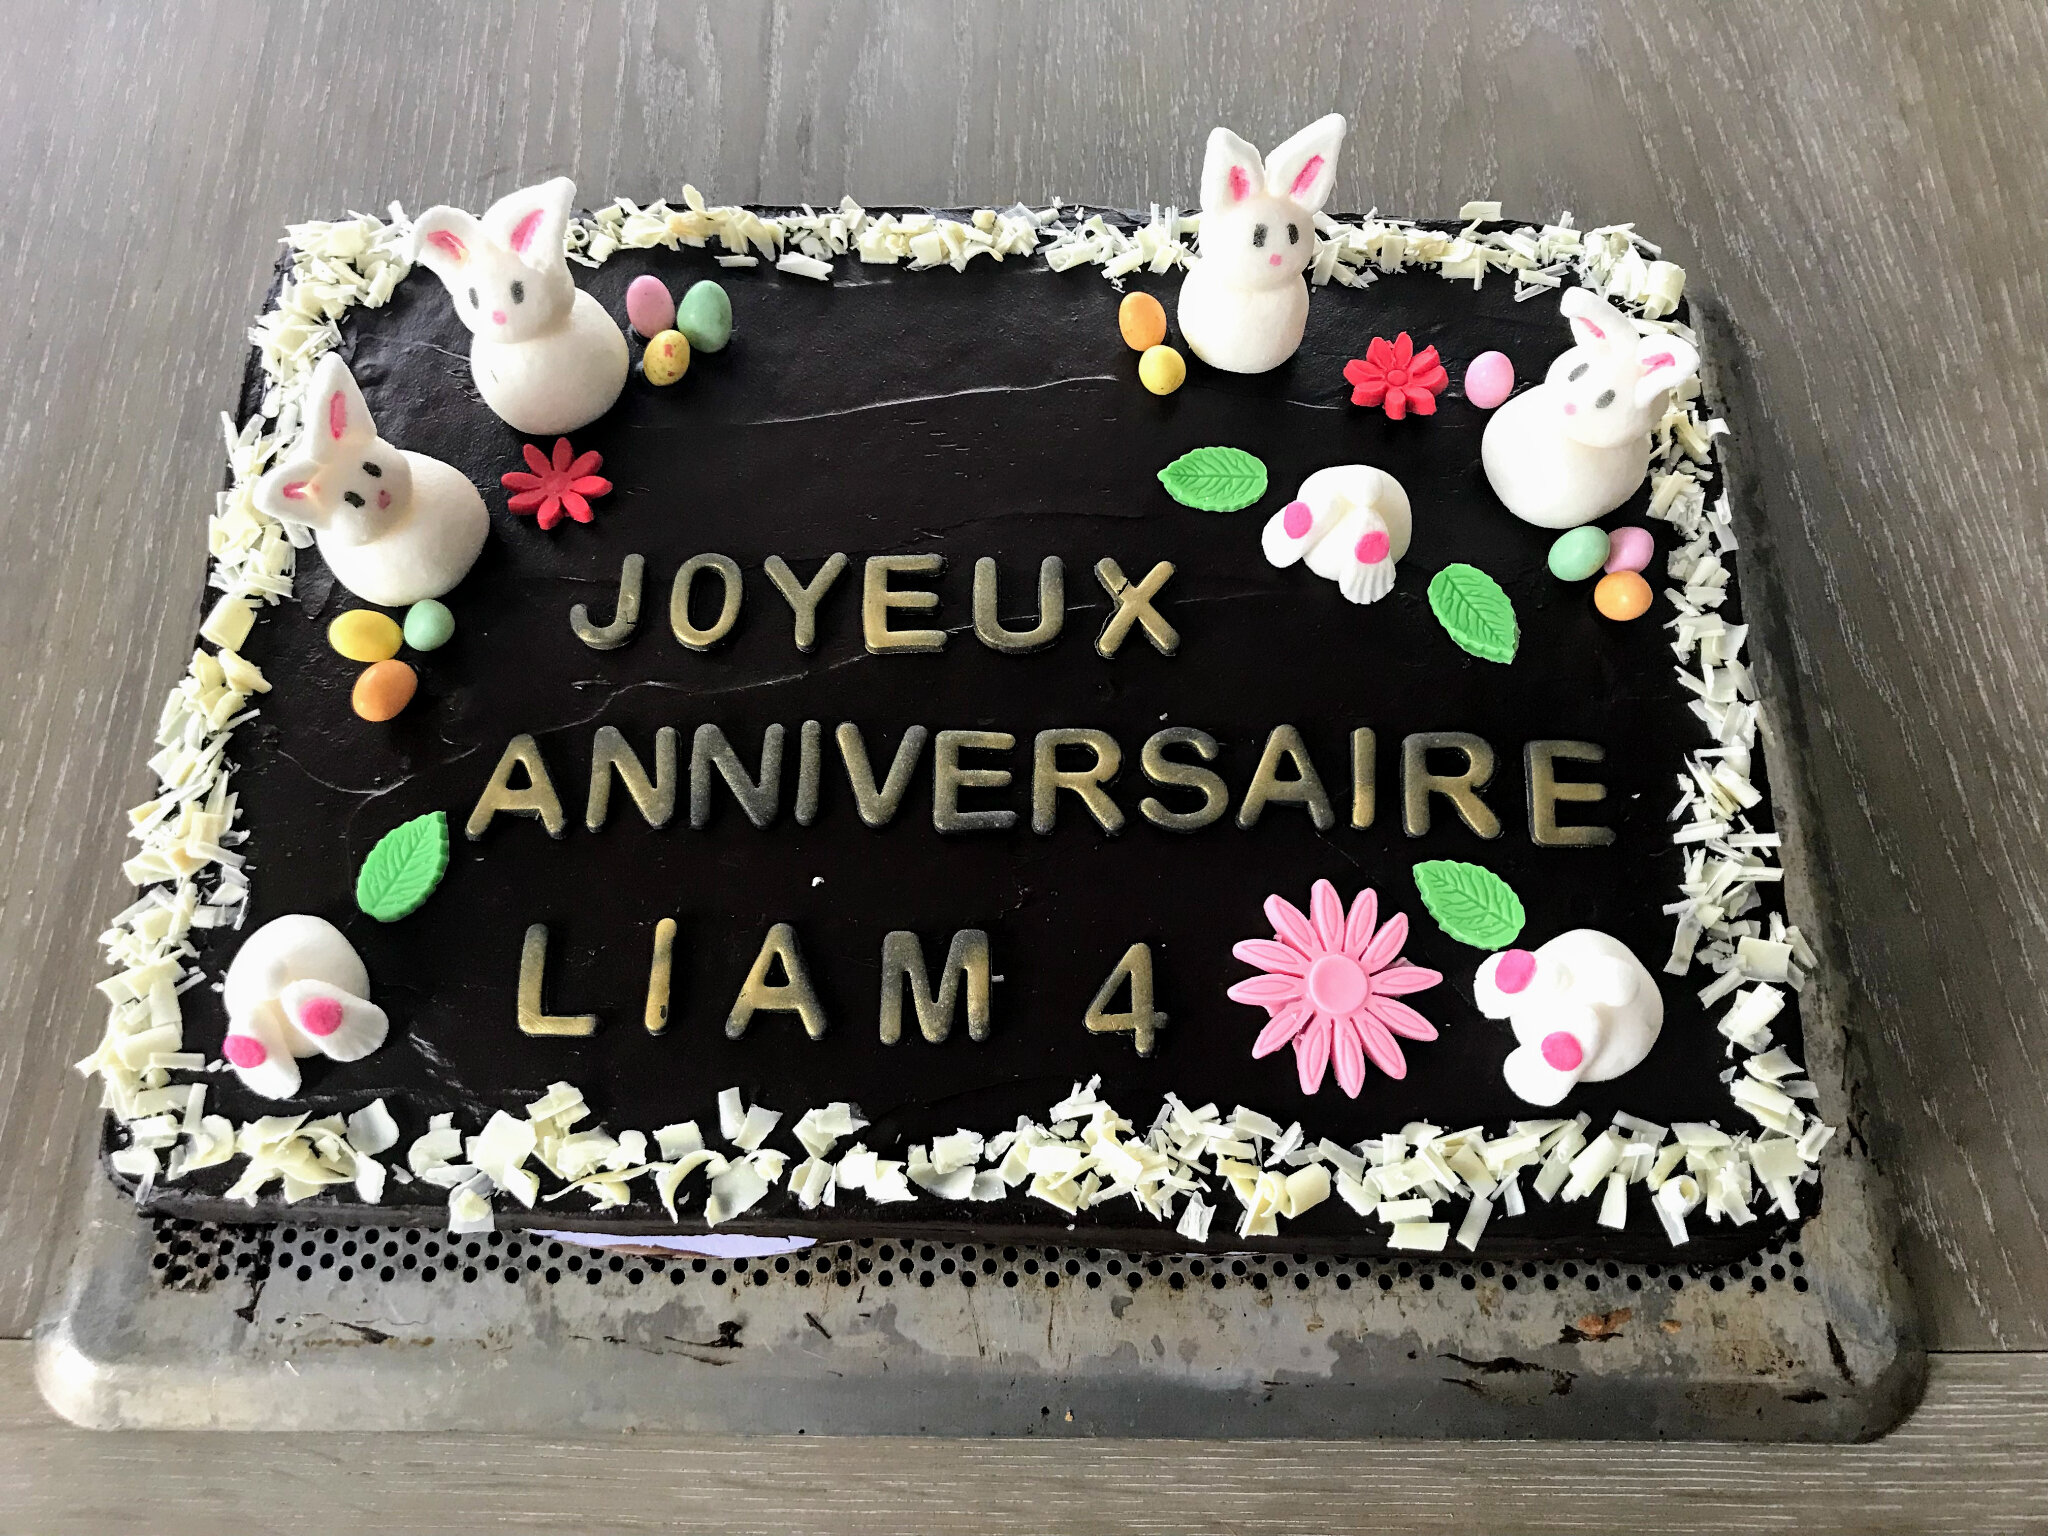 Gateau Au Chocolat Cake Design Decoration Paque Et Lapin Pour Anniversaire Les Macarons A La Chartreuse